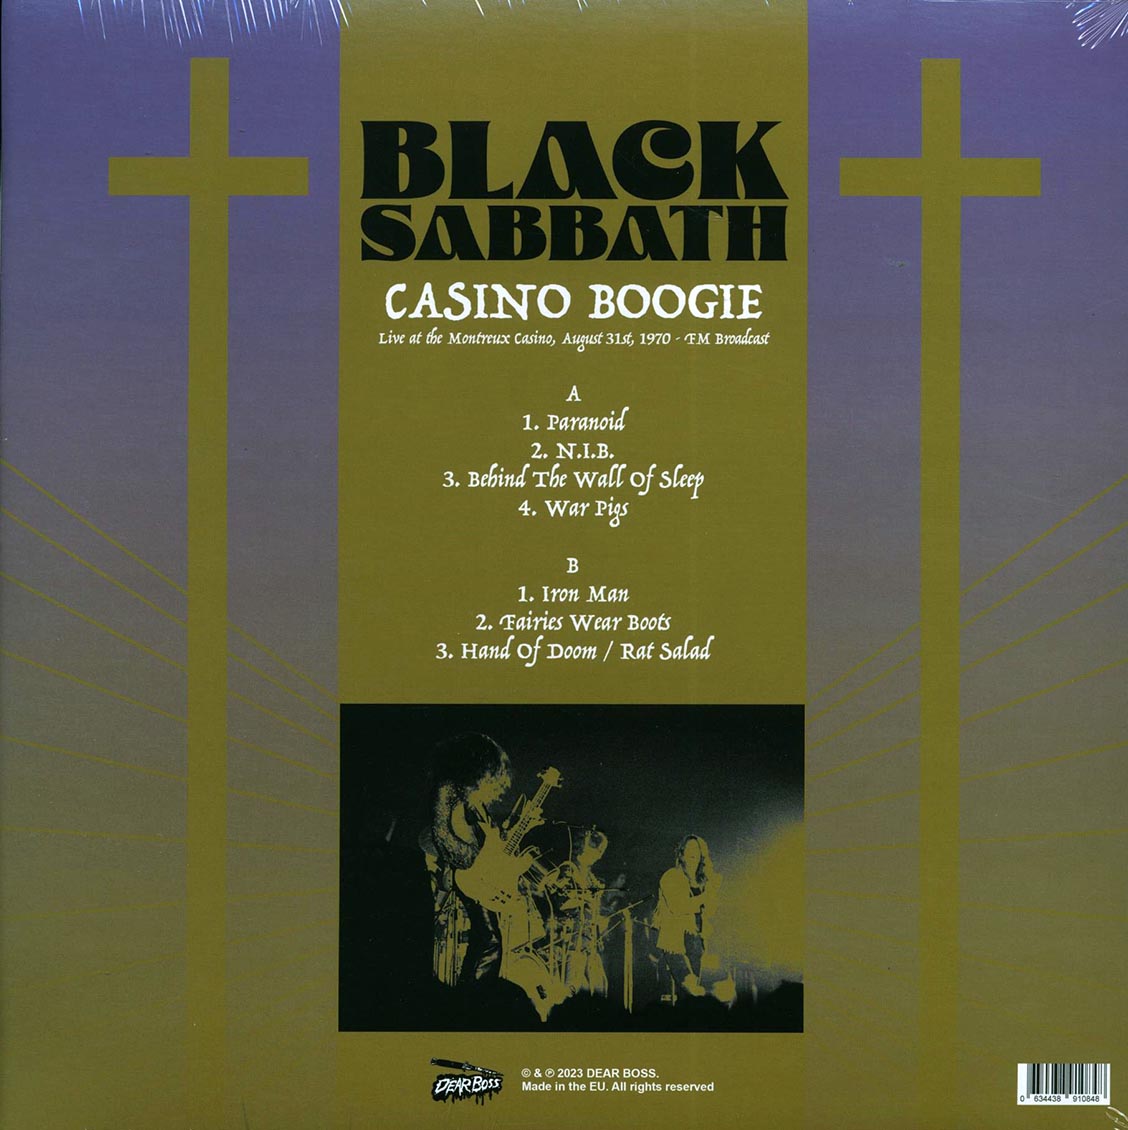 Black Sabbath - Casino Boogie: Live At The Montreux Casino, August 31st 1970 FM Broadcast - Vinyl LP, LP